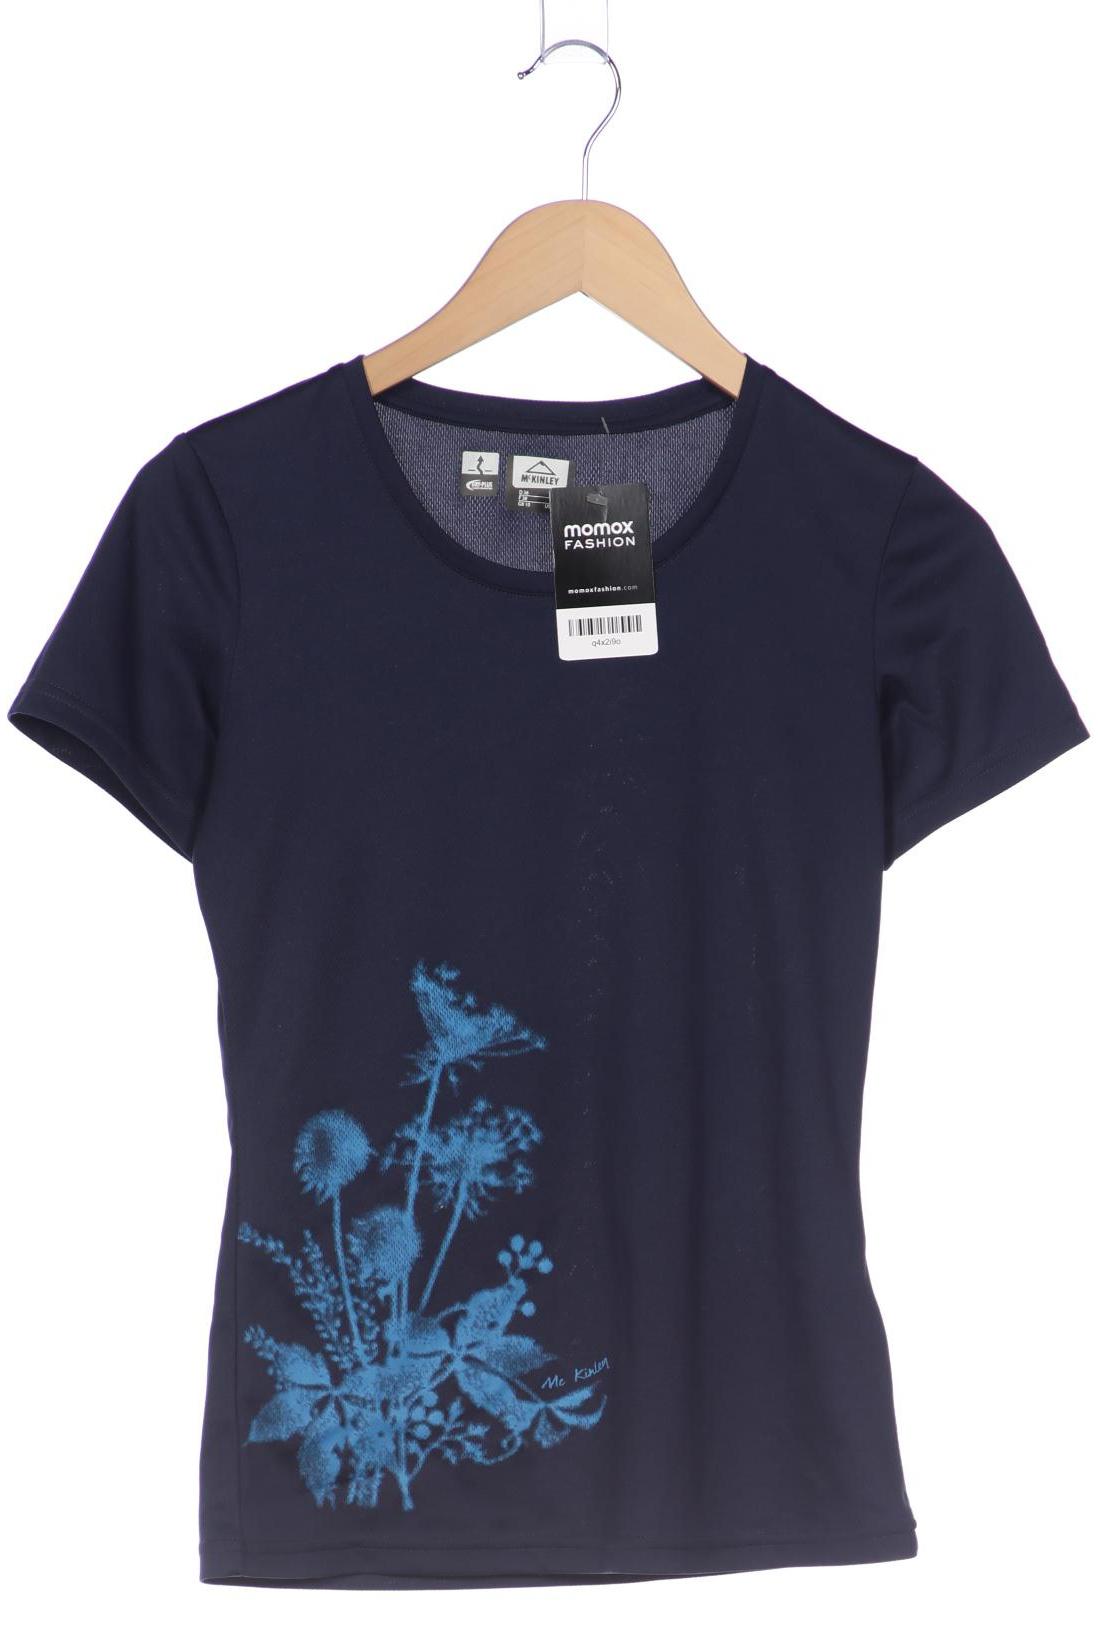 McKINLEY Damen T-Shirt, marineblau, Gr. 36 von mckinley